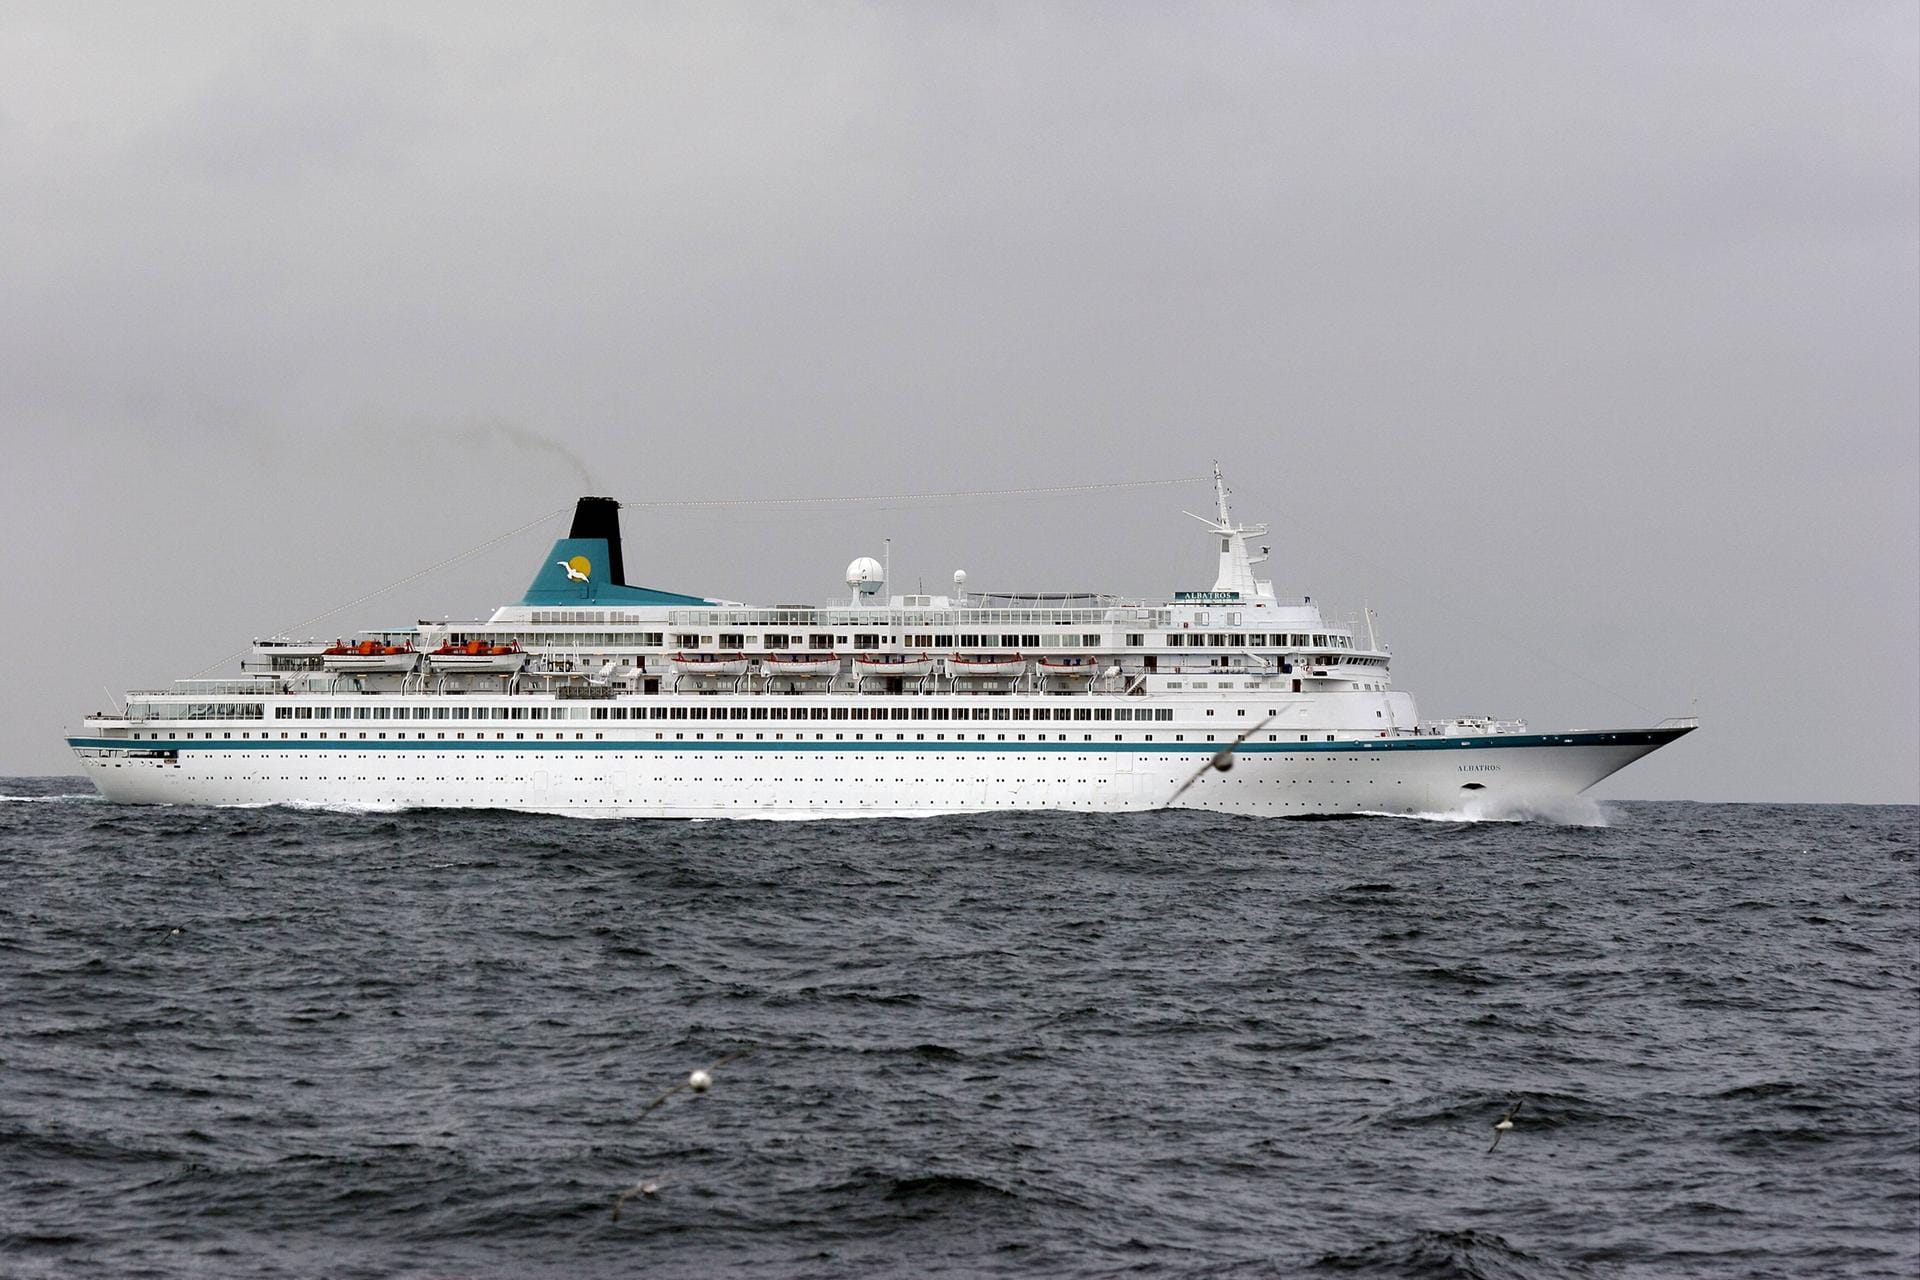 Auch das Kreuzfahrtschiff "Albatross" ist mit von der Partie. Dieses Jahr nicht dabei sind allerdings die "Queens" der Reederei Cunard.